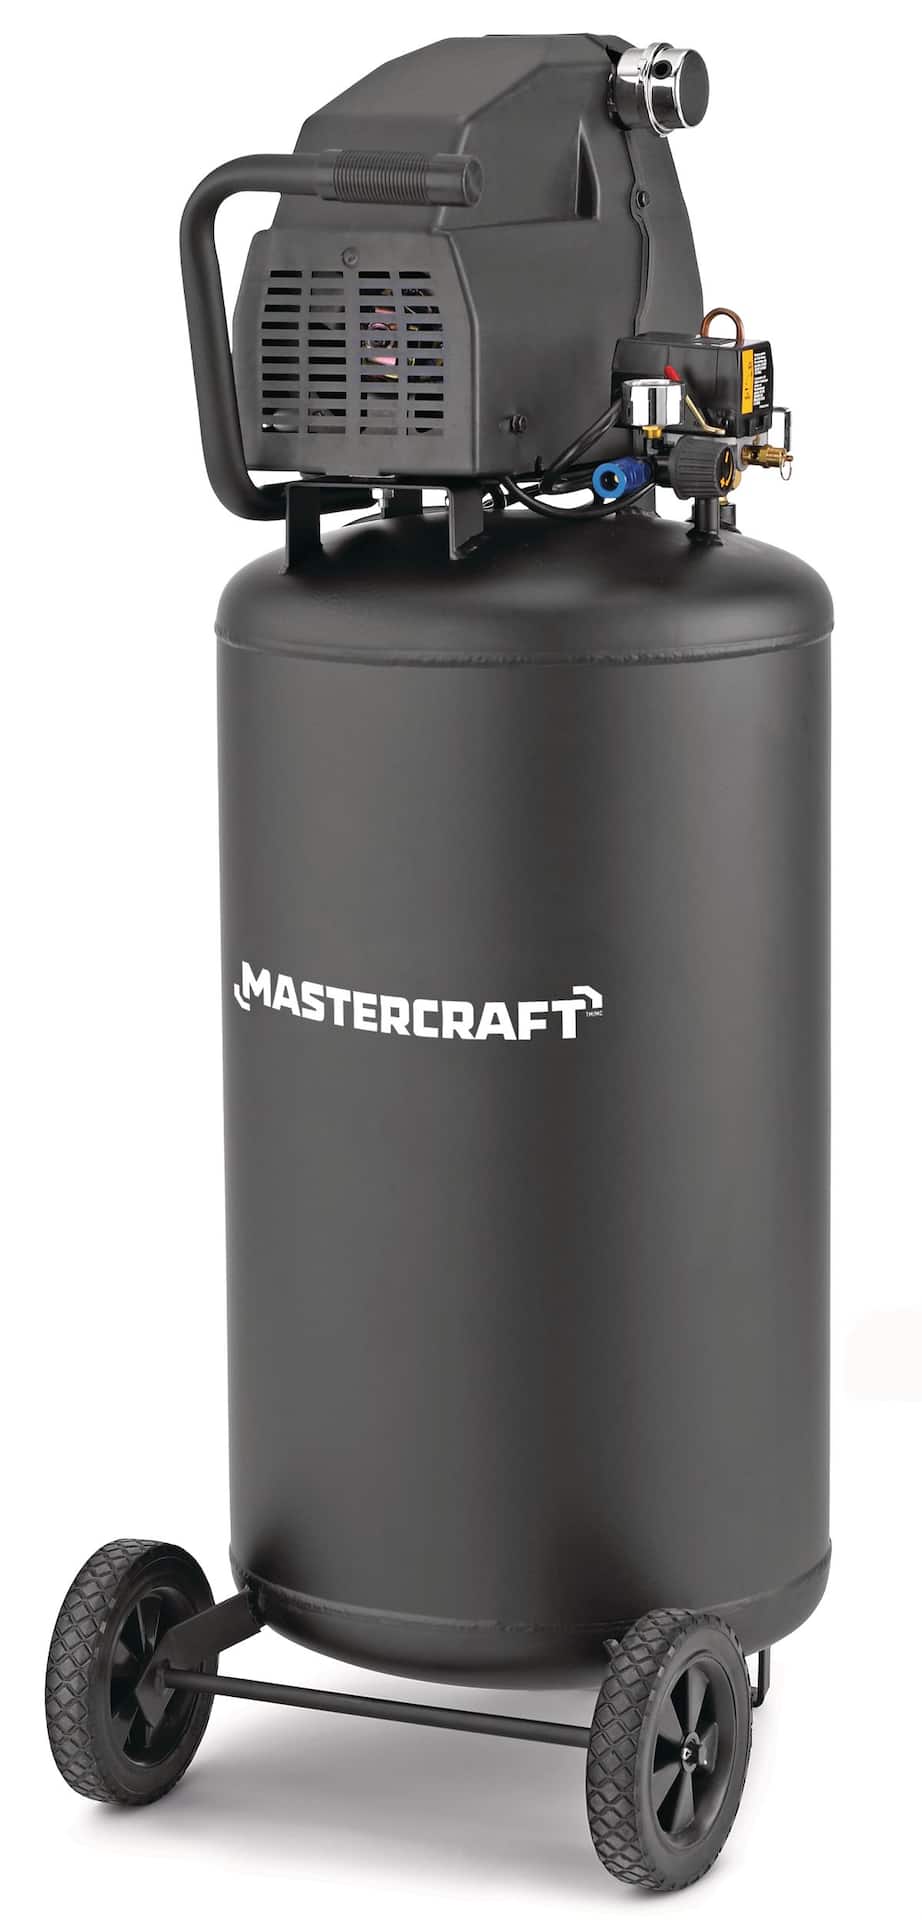 Mastercraft Air Compressor Accessory Kit with Hose, 20-pc